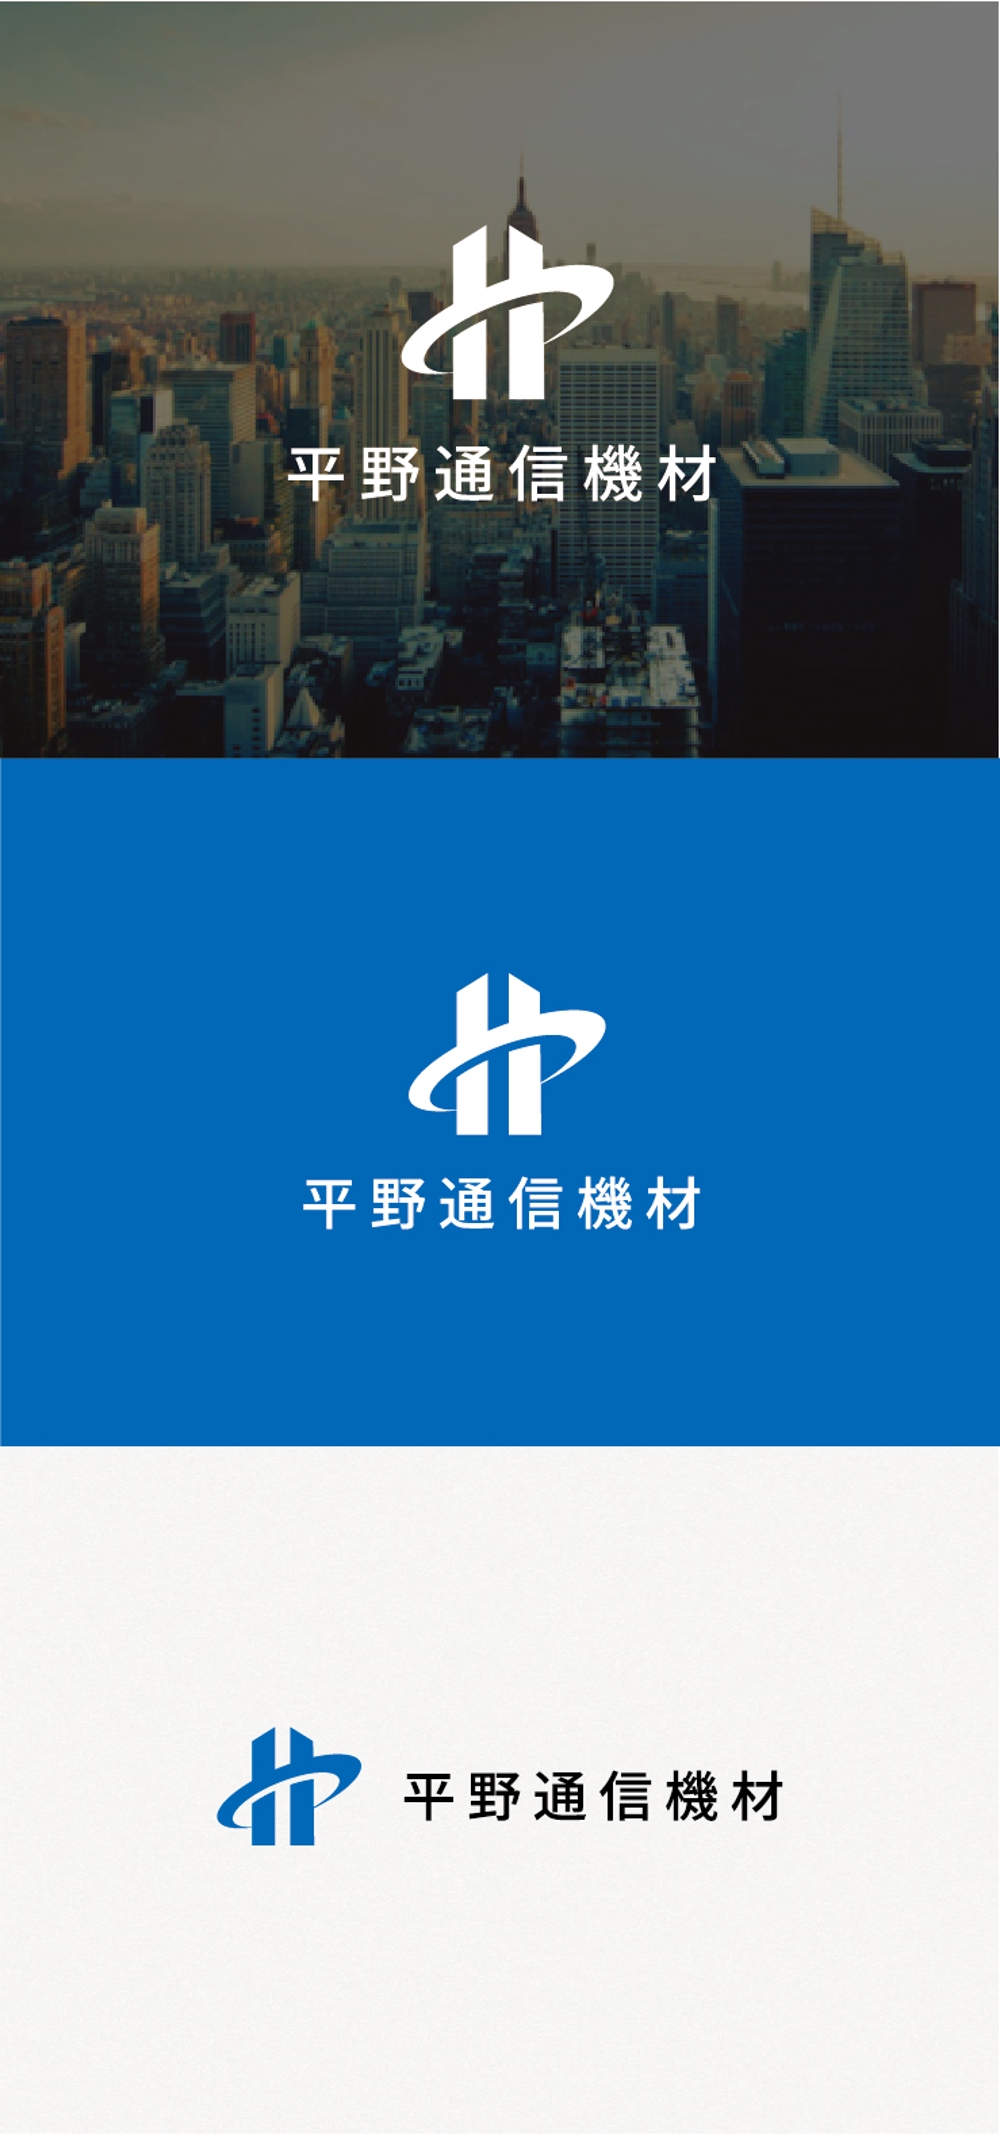 専門商社「平野通信機材」の企業ロゴ